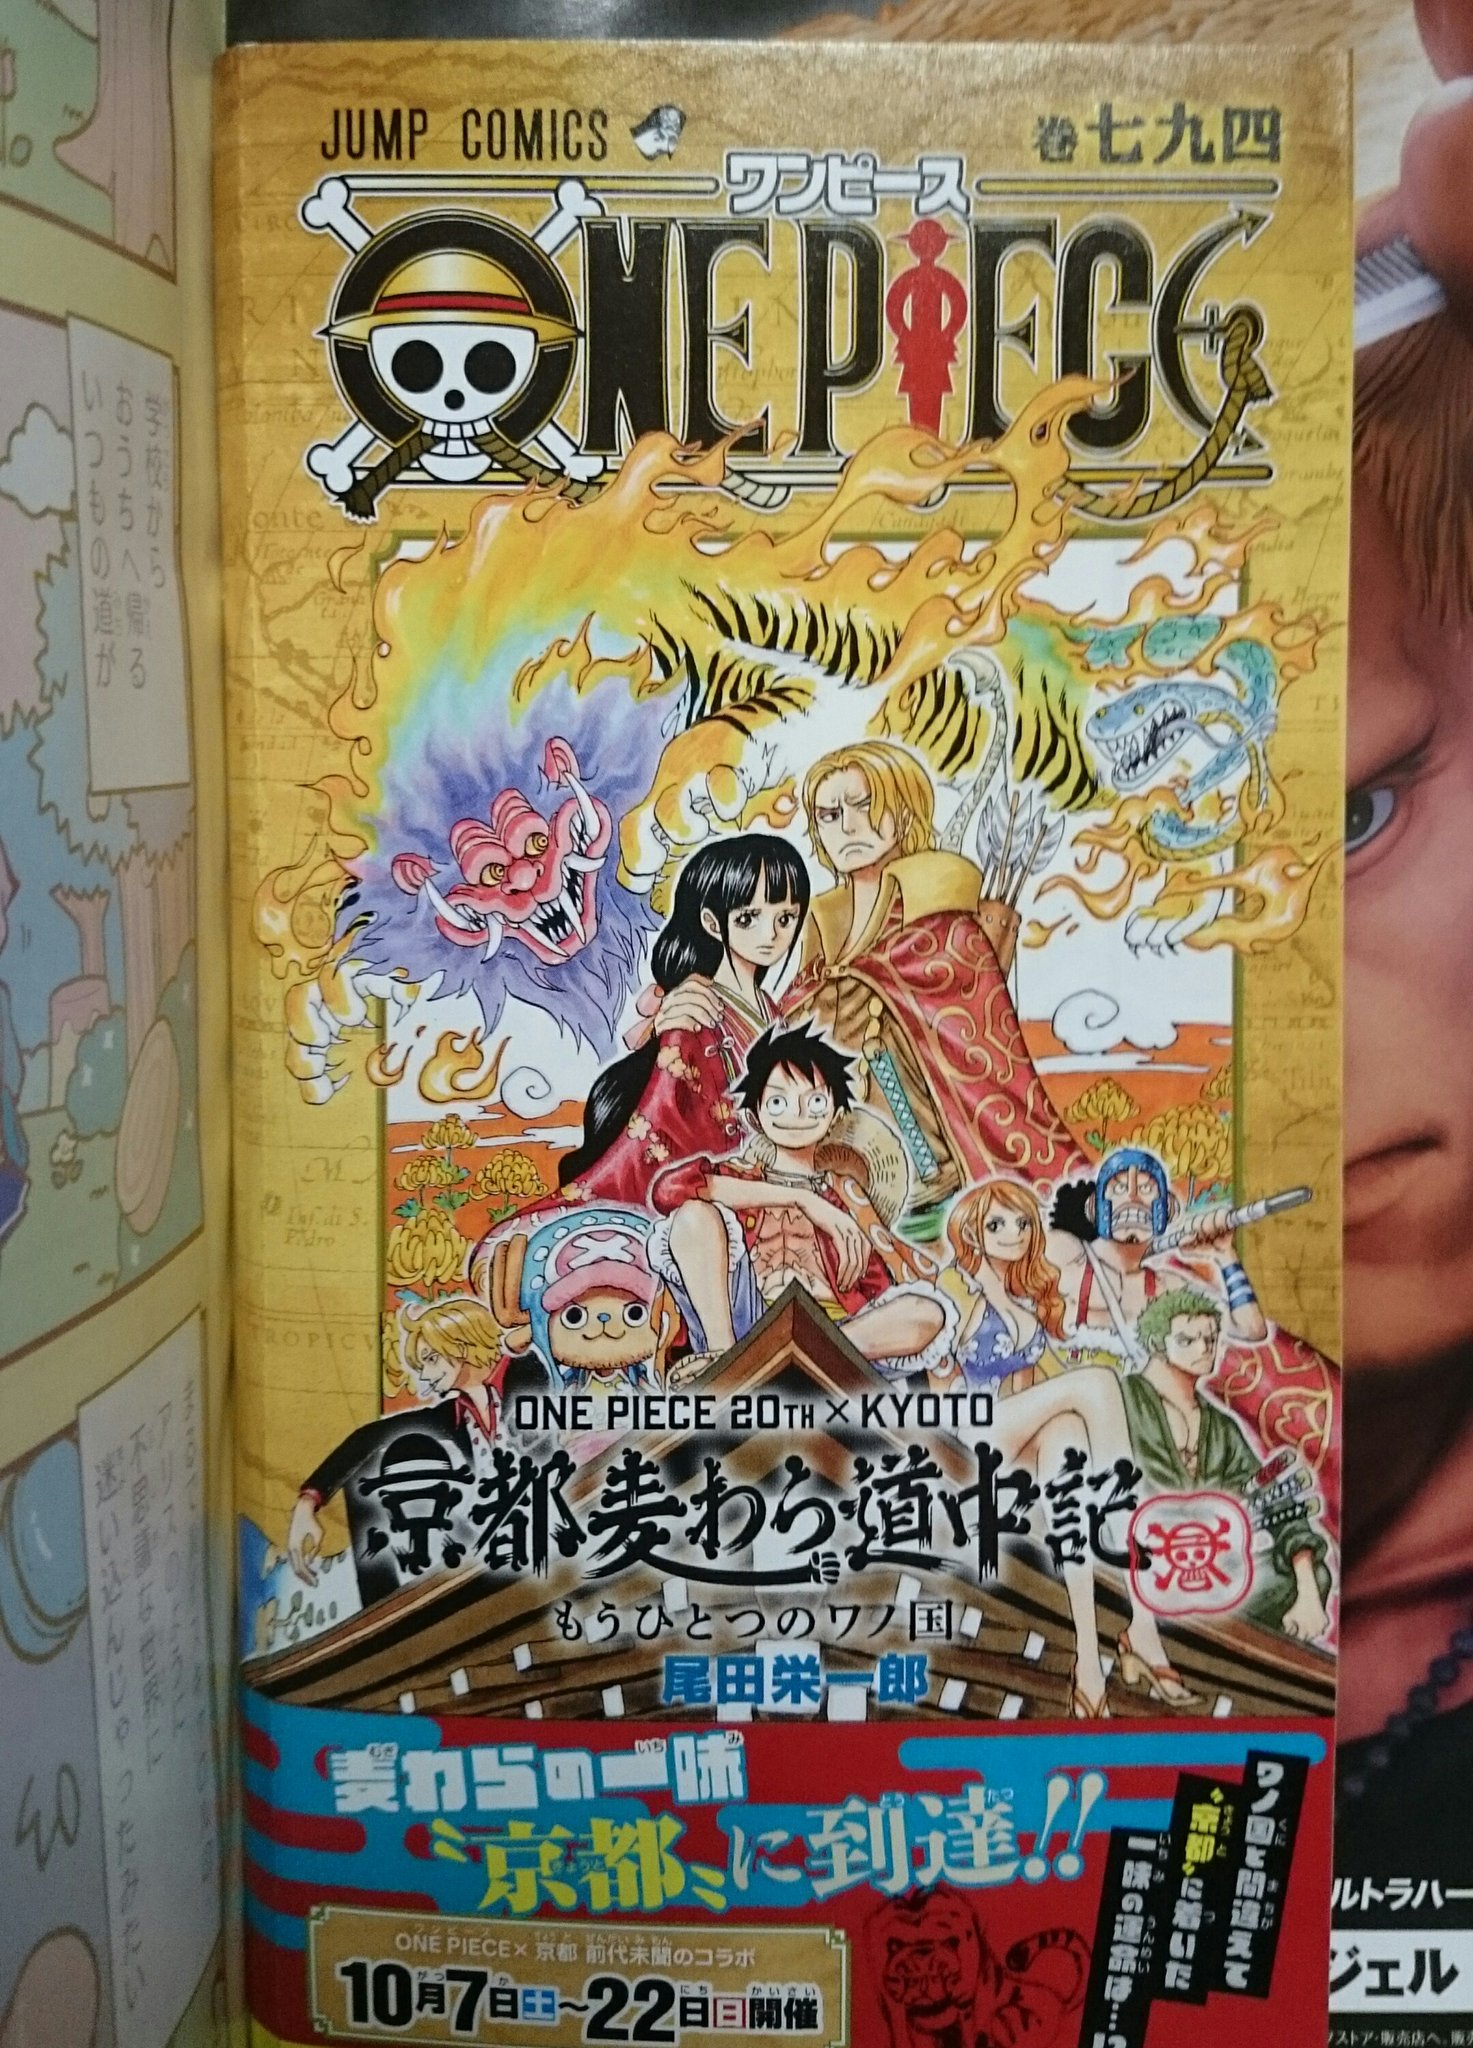 あさの 今日読んだ雑誌 週刊少年ジャンプ 45号 お目当ては付録の One Piece 794巻 ペラペラの小冊子なんだけれど コミックスのロゴマークが背表紙に入っていれば買わずにはいられない それにしてもこの表紙 ジャンプ史上一番かわいいんでないの